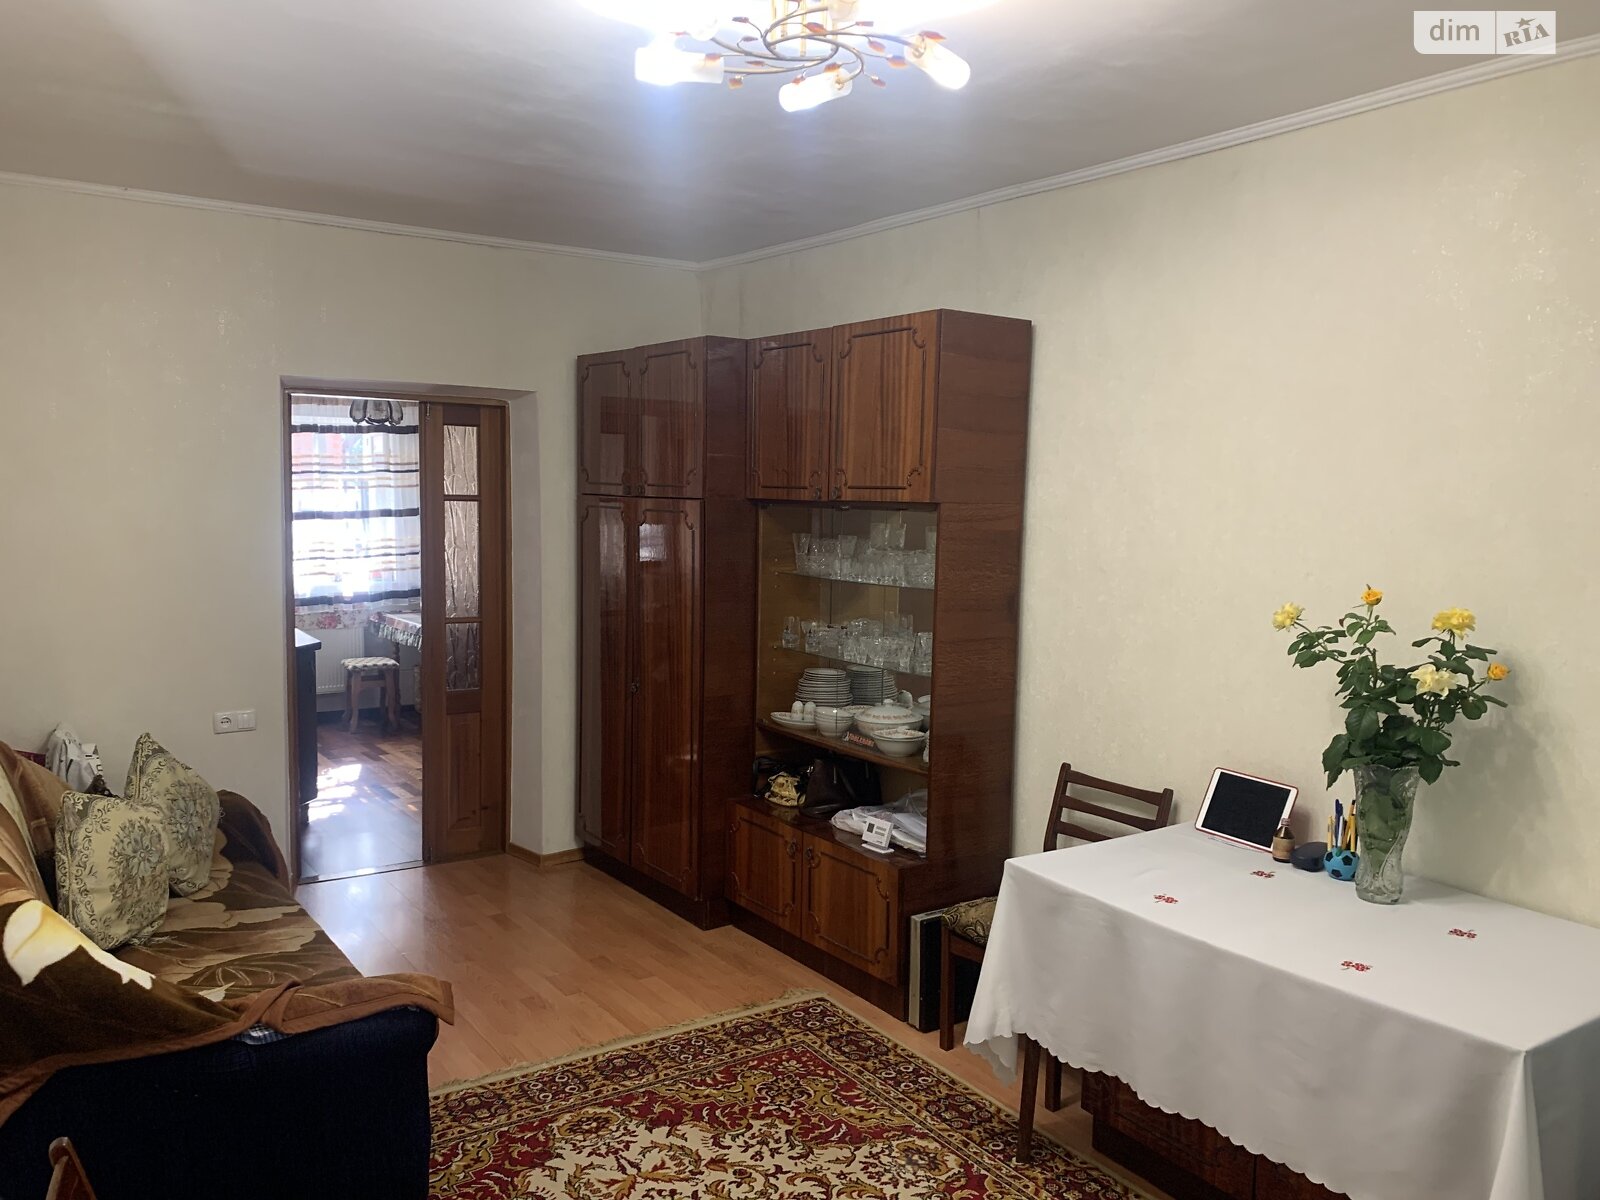 Продажа части дома в Виннице, улица Николая Зерова (Пархоменко), 3 комнаты фото 1